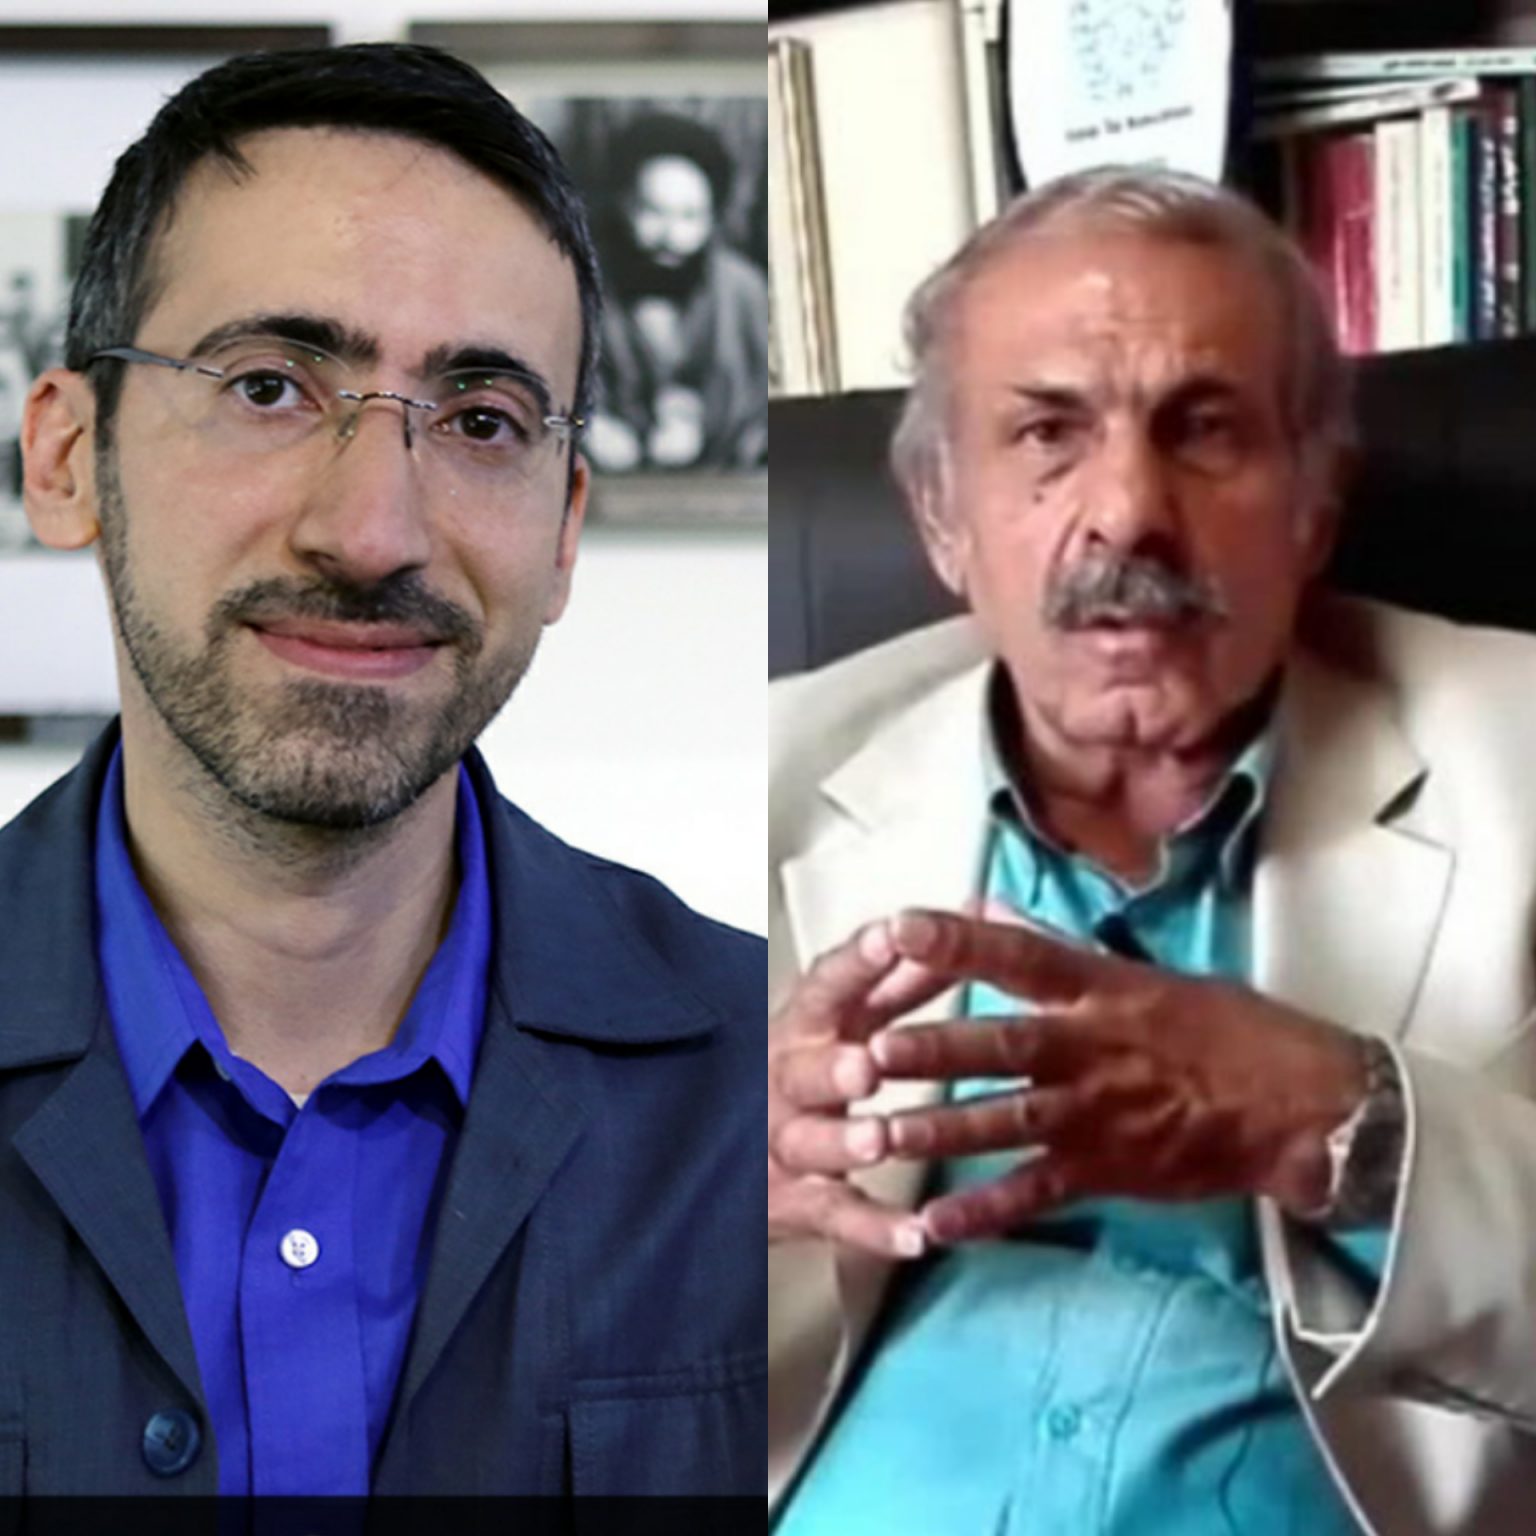 گفتگویی با دو وکیل درباره ابعاد حقوقی تیراندازی در متروی تهران